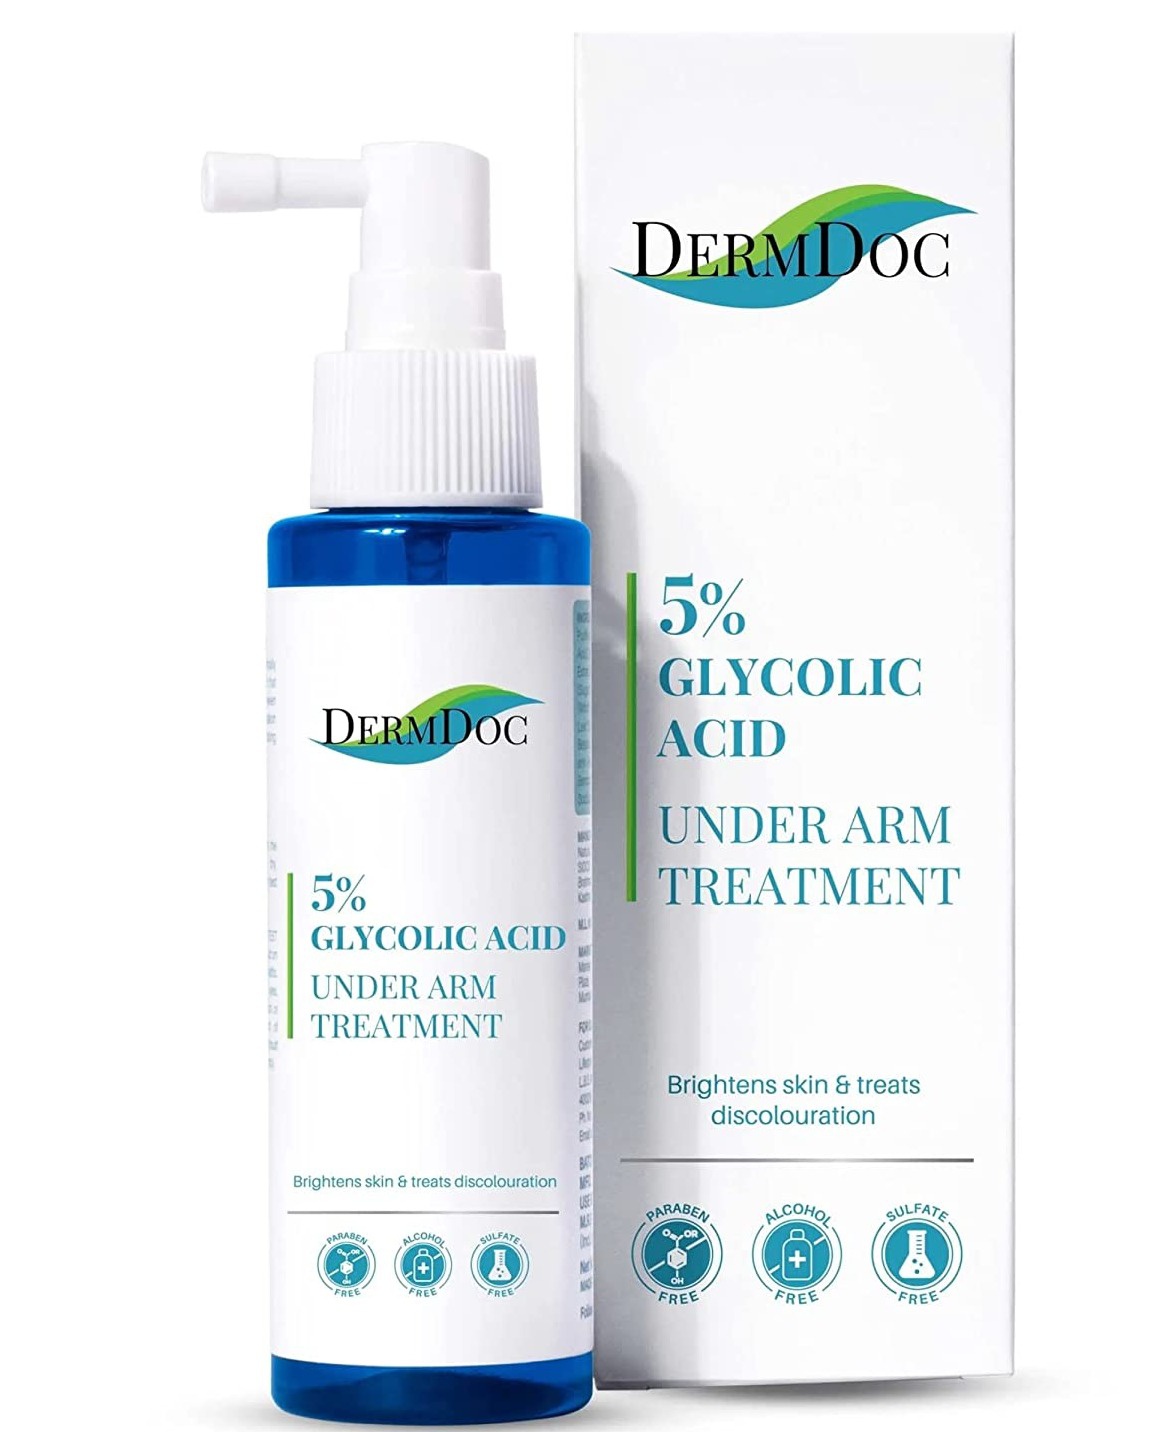 DermDoc 5% Glycolic Acid Underarm Treatment